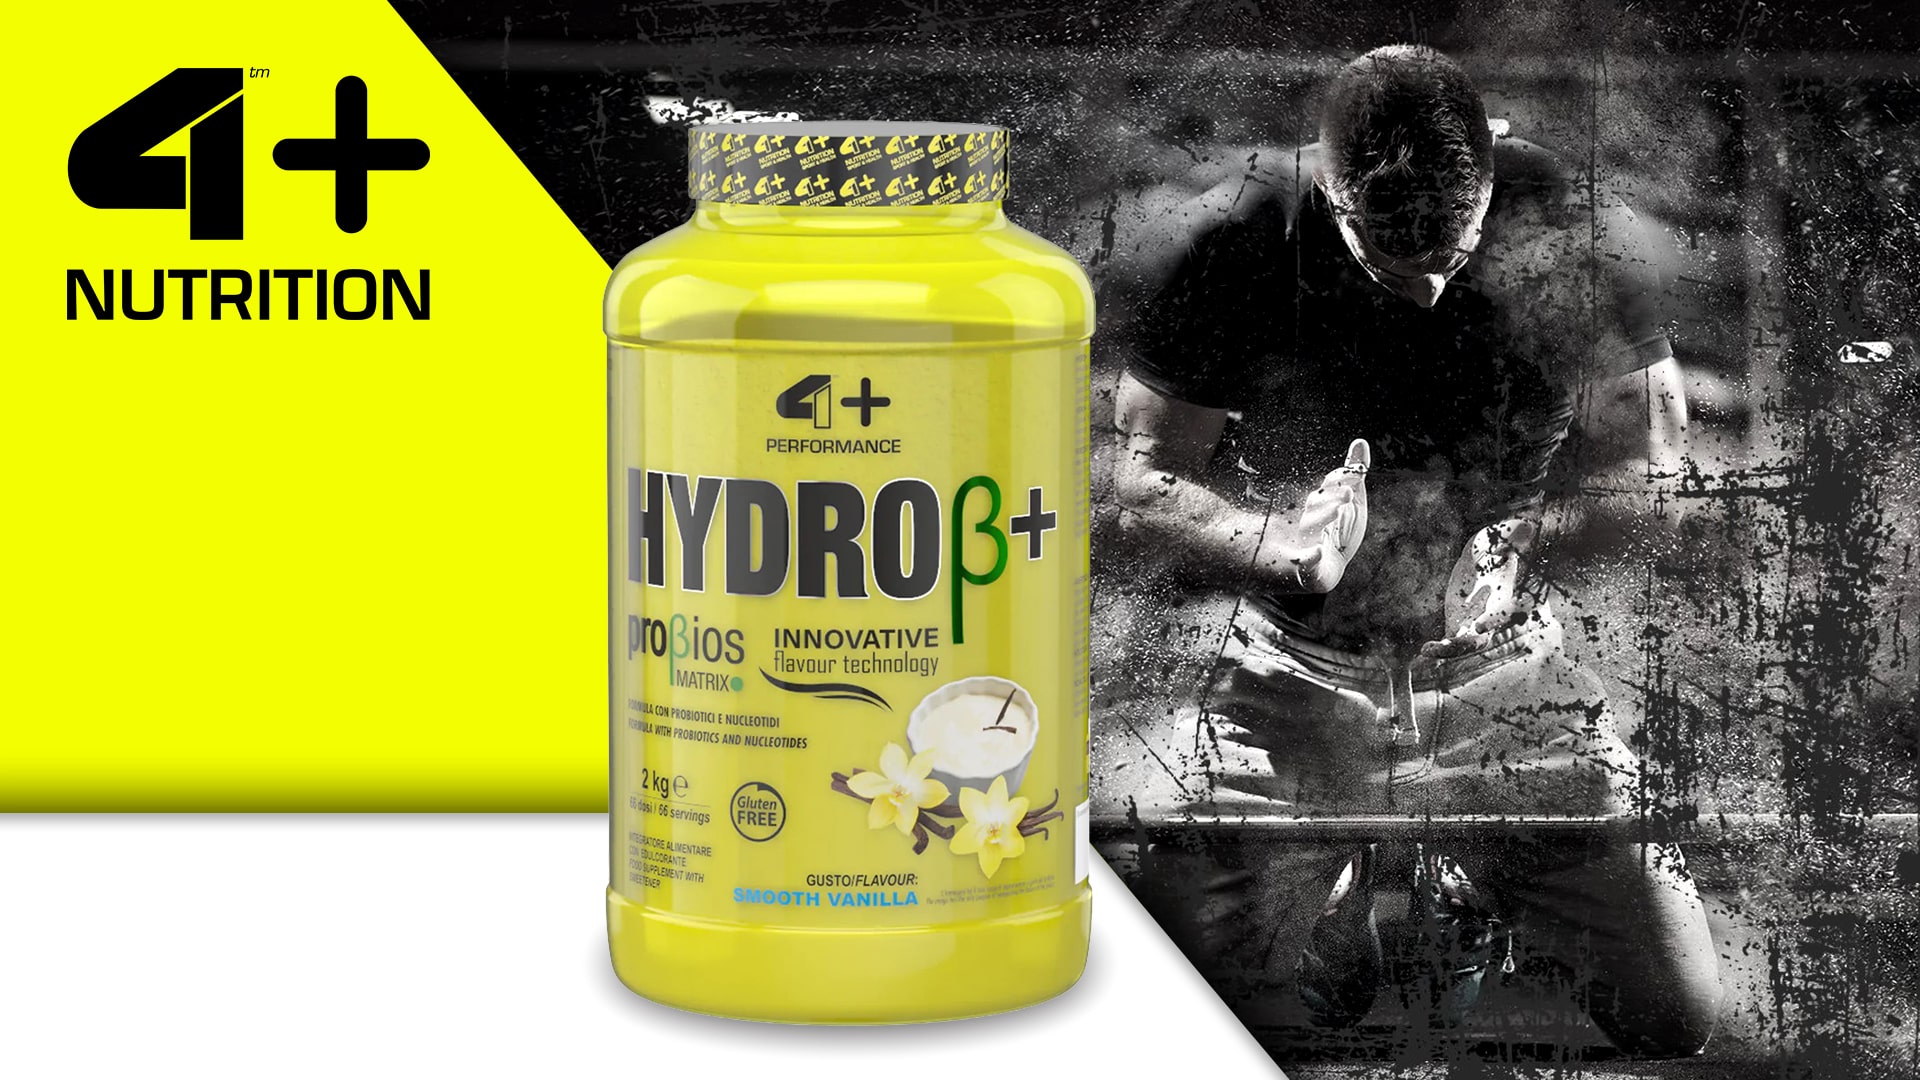 4+ Nutrition - Hydro+ Probiotics 